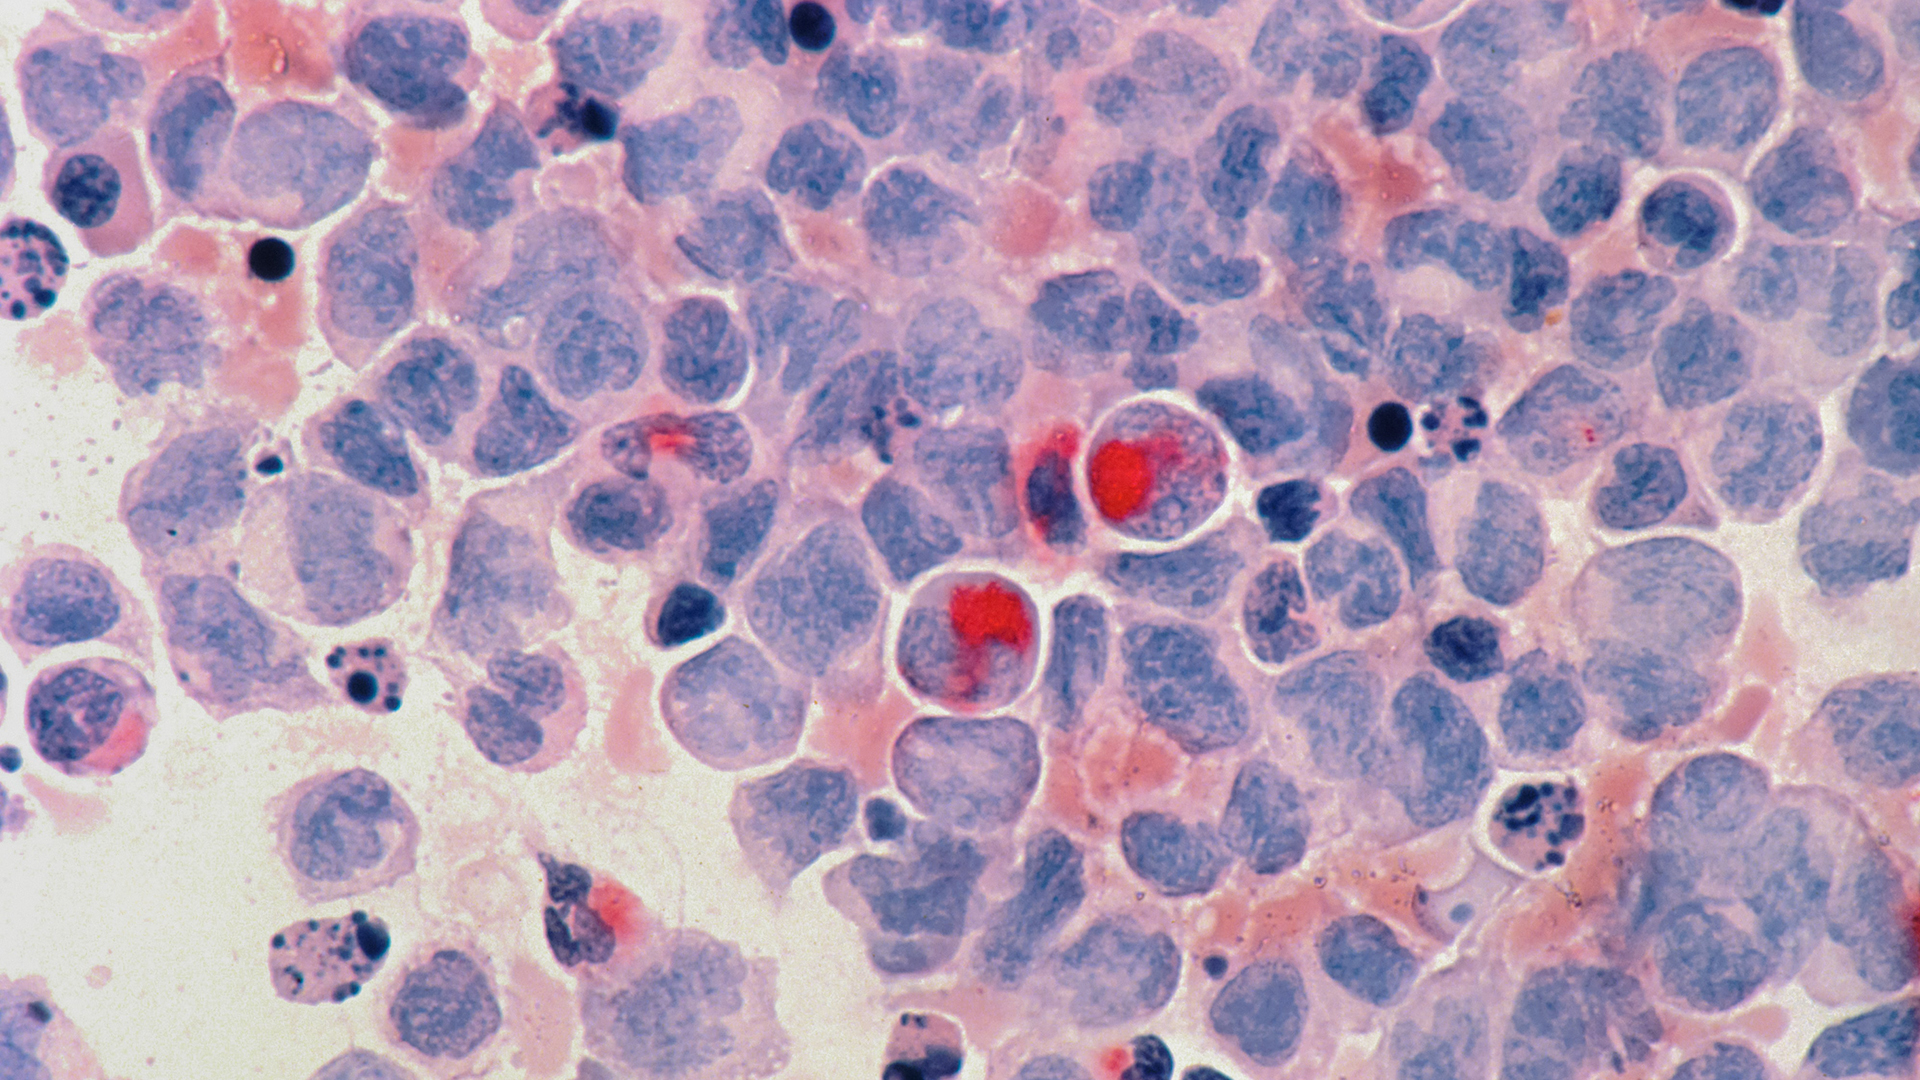 Immagine di cellule tumorali al microscopio